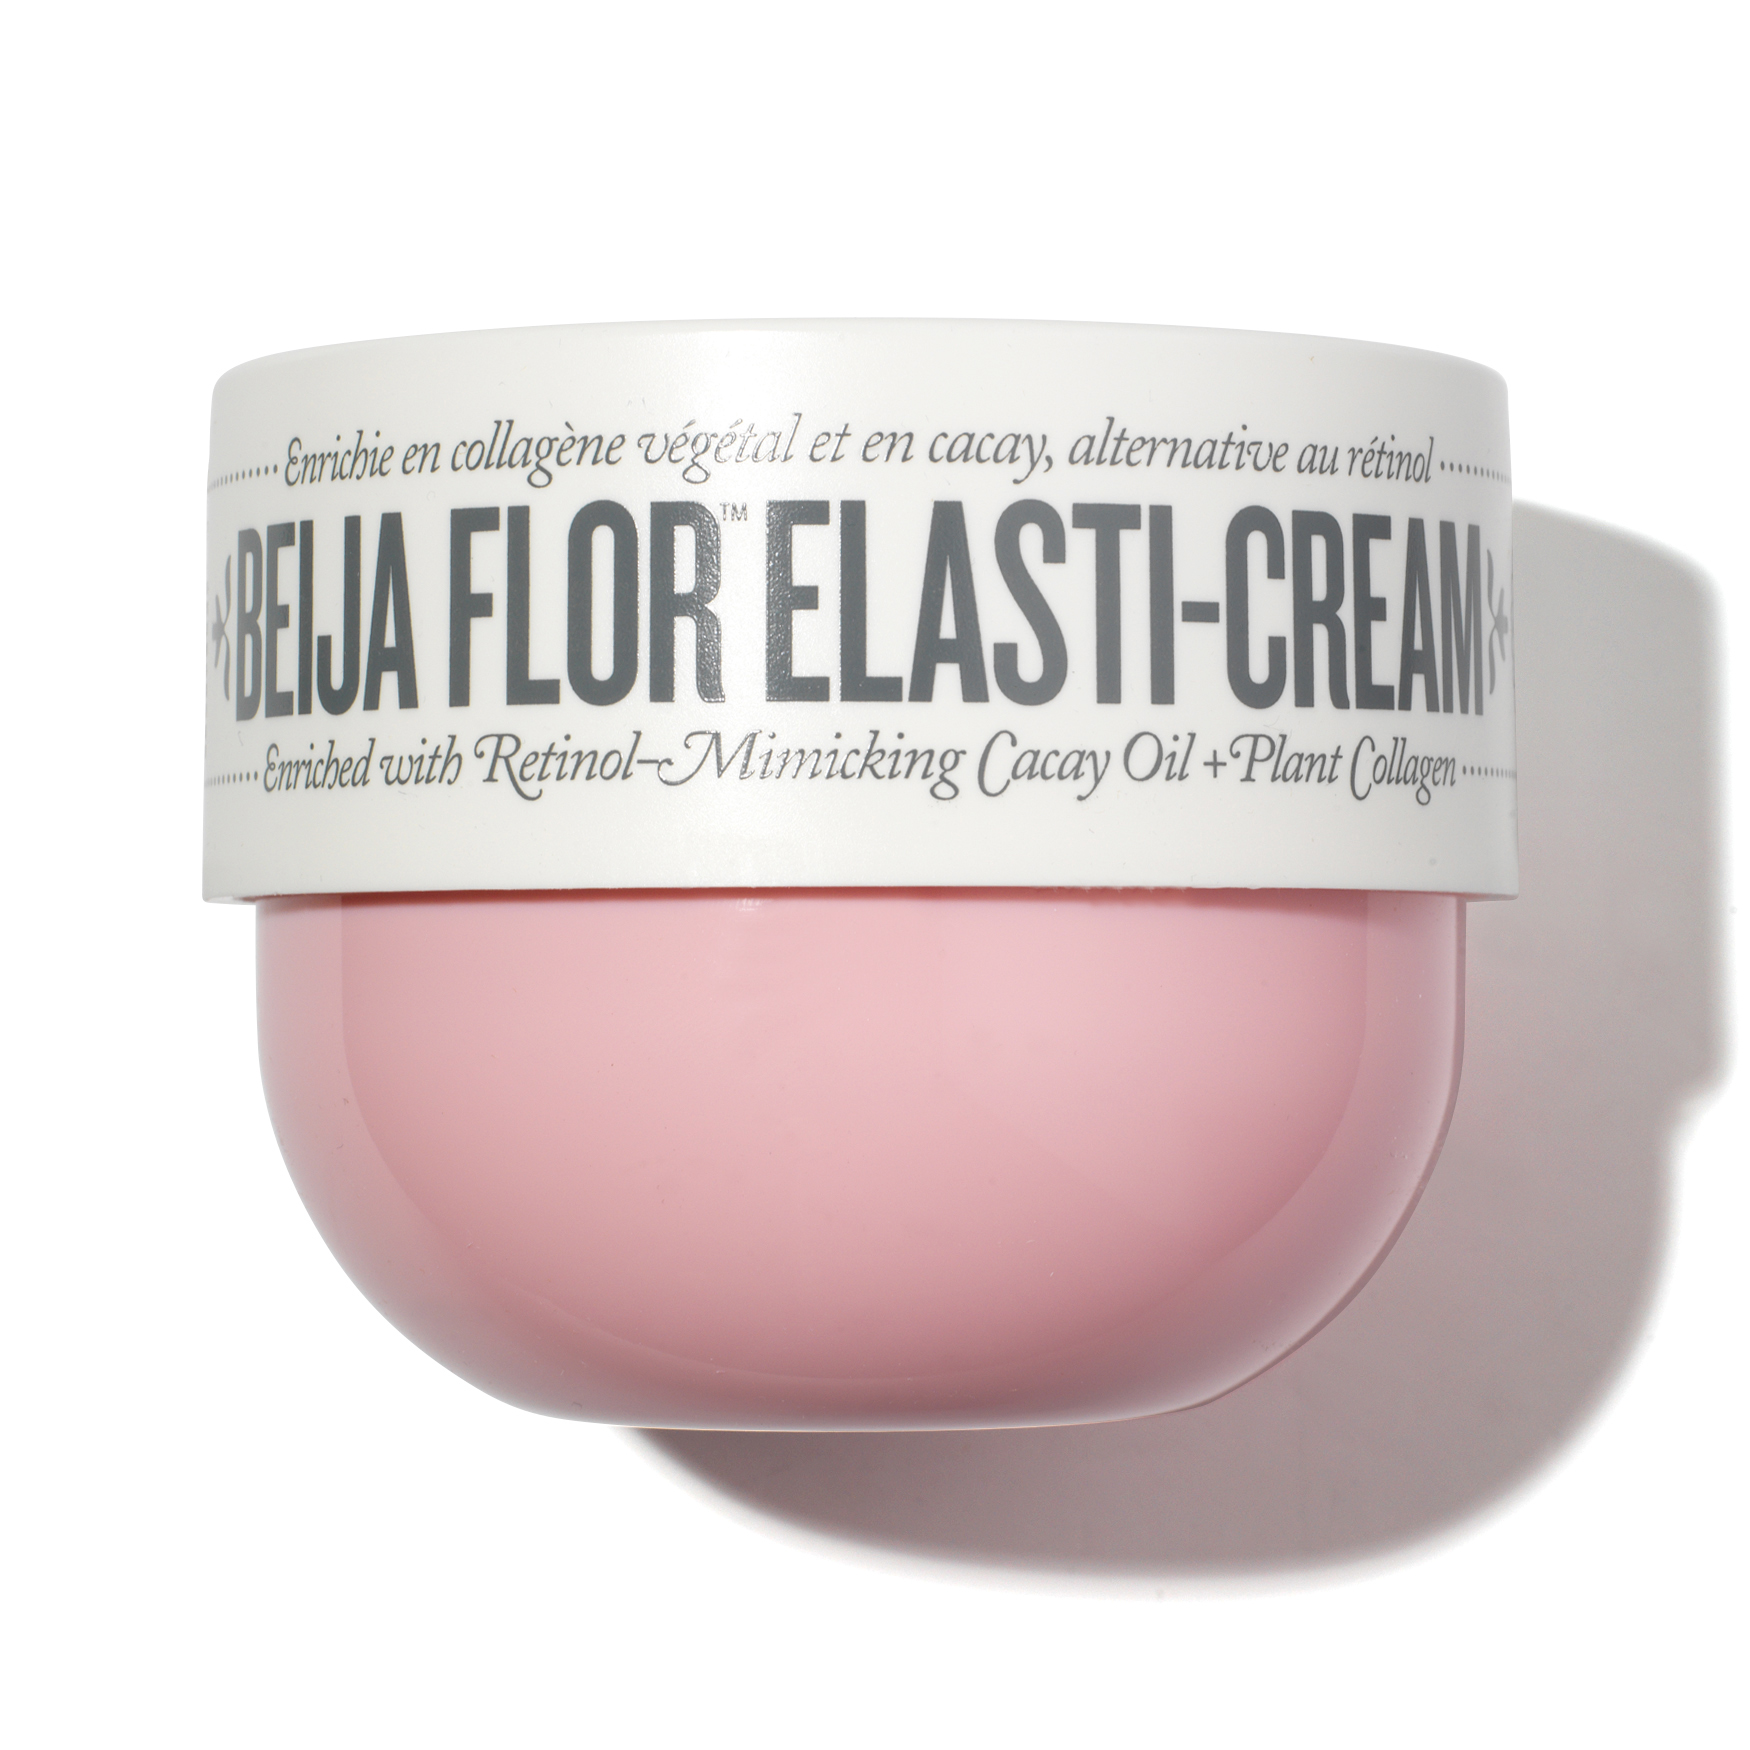 NEW* Sol de Janeiro Limited Edition Body Mists & Cheirosa 68 Mist and Beija  Flor Elasti-Cream 